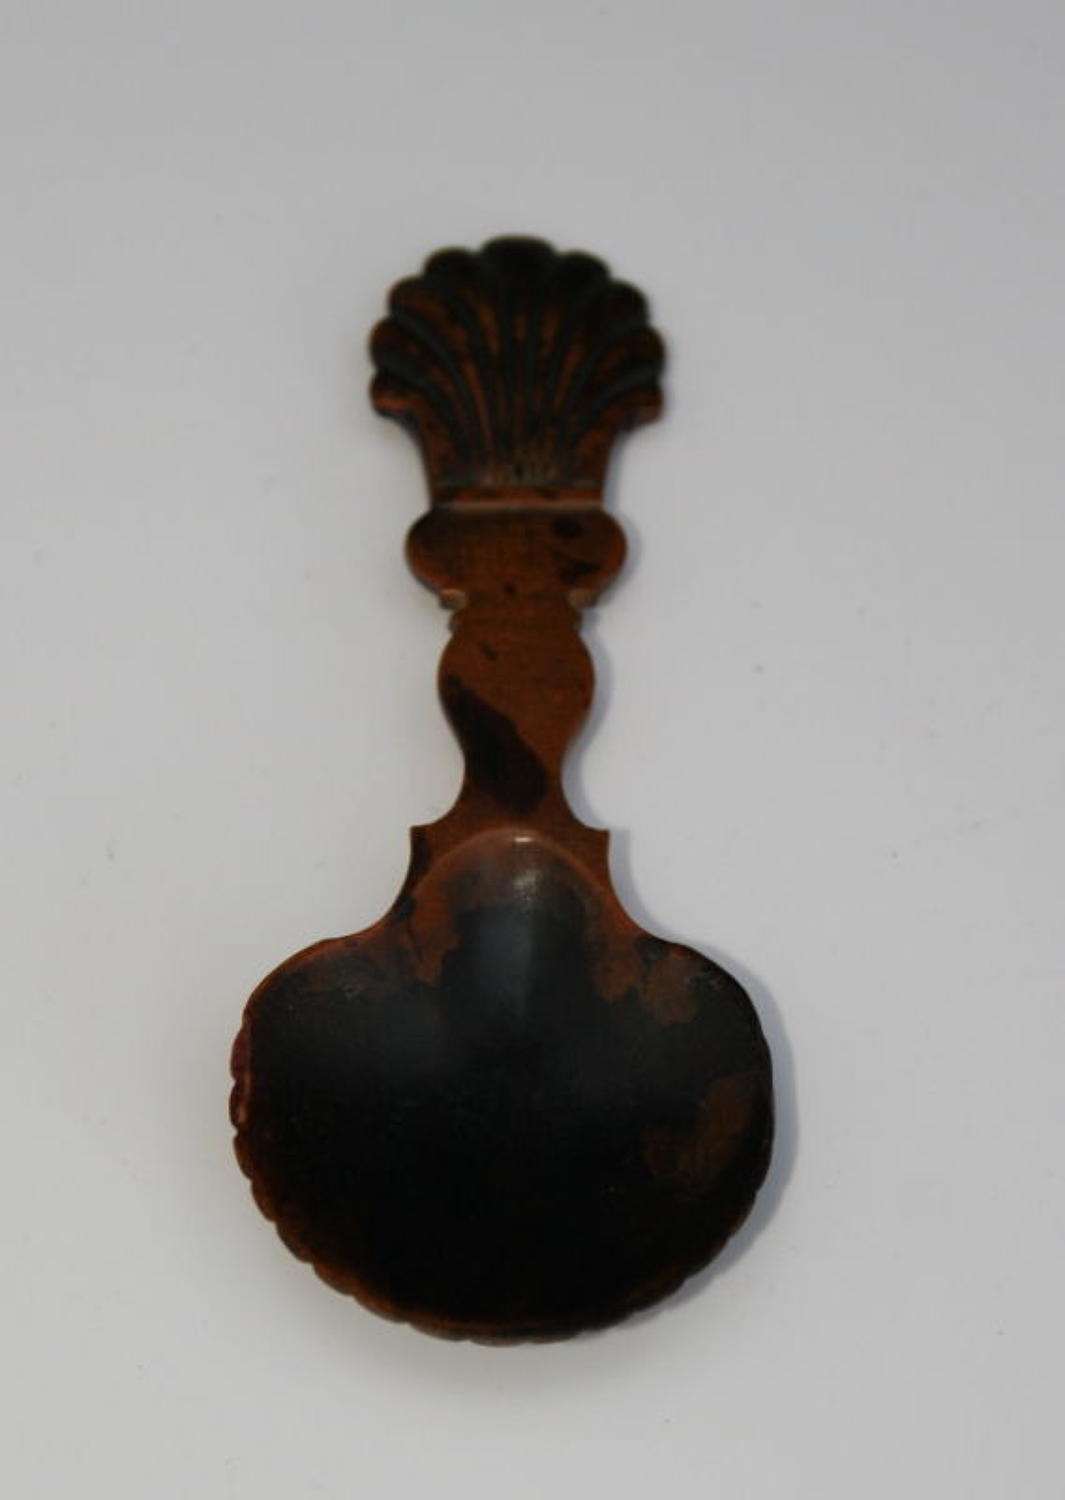 Treen Caddy Spoon c.1780